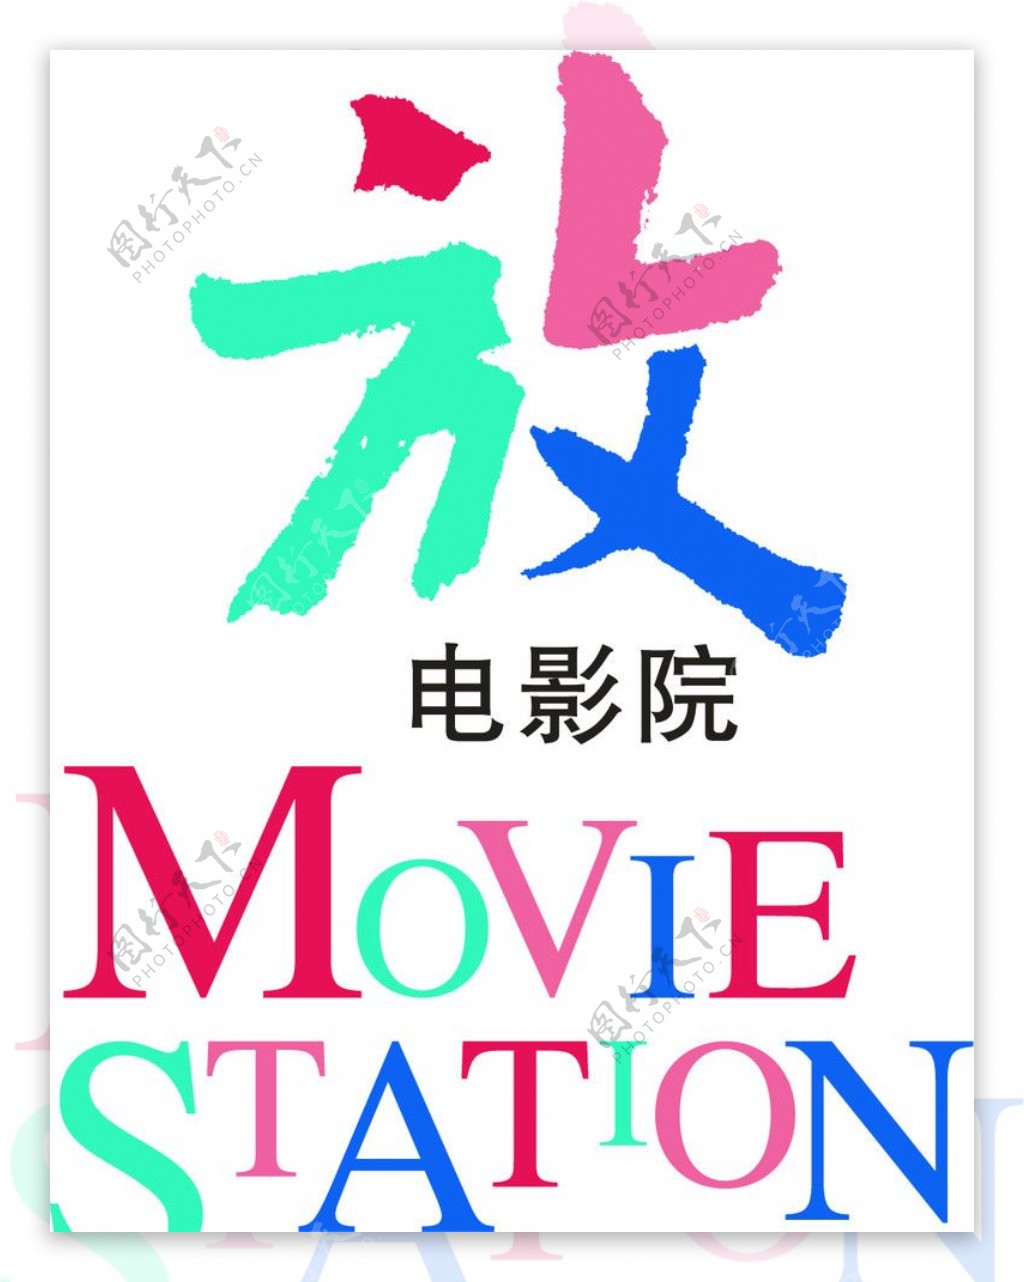 放电影院logo图片